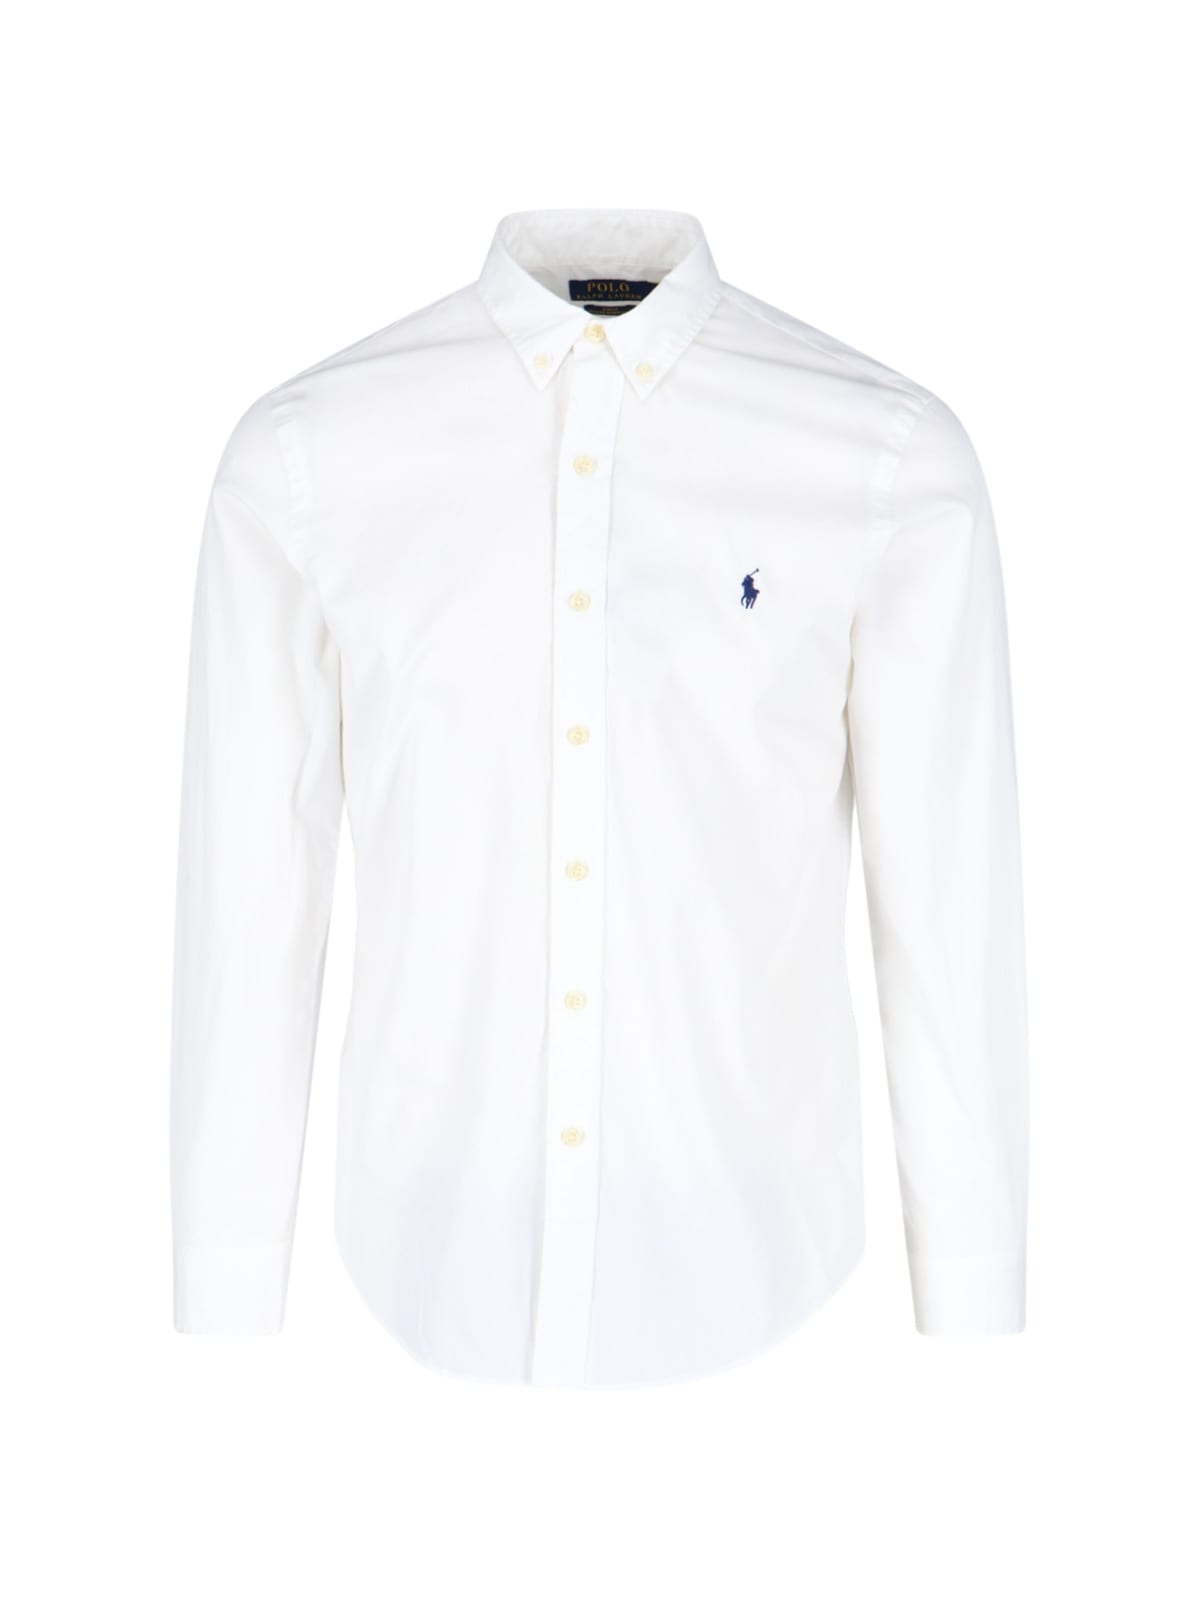 Shop Polo Ralph Lauren Shirt